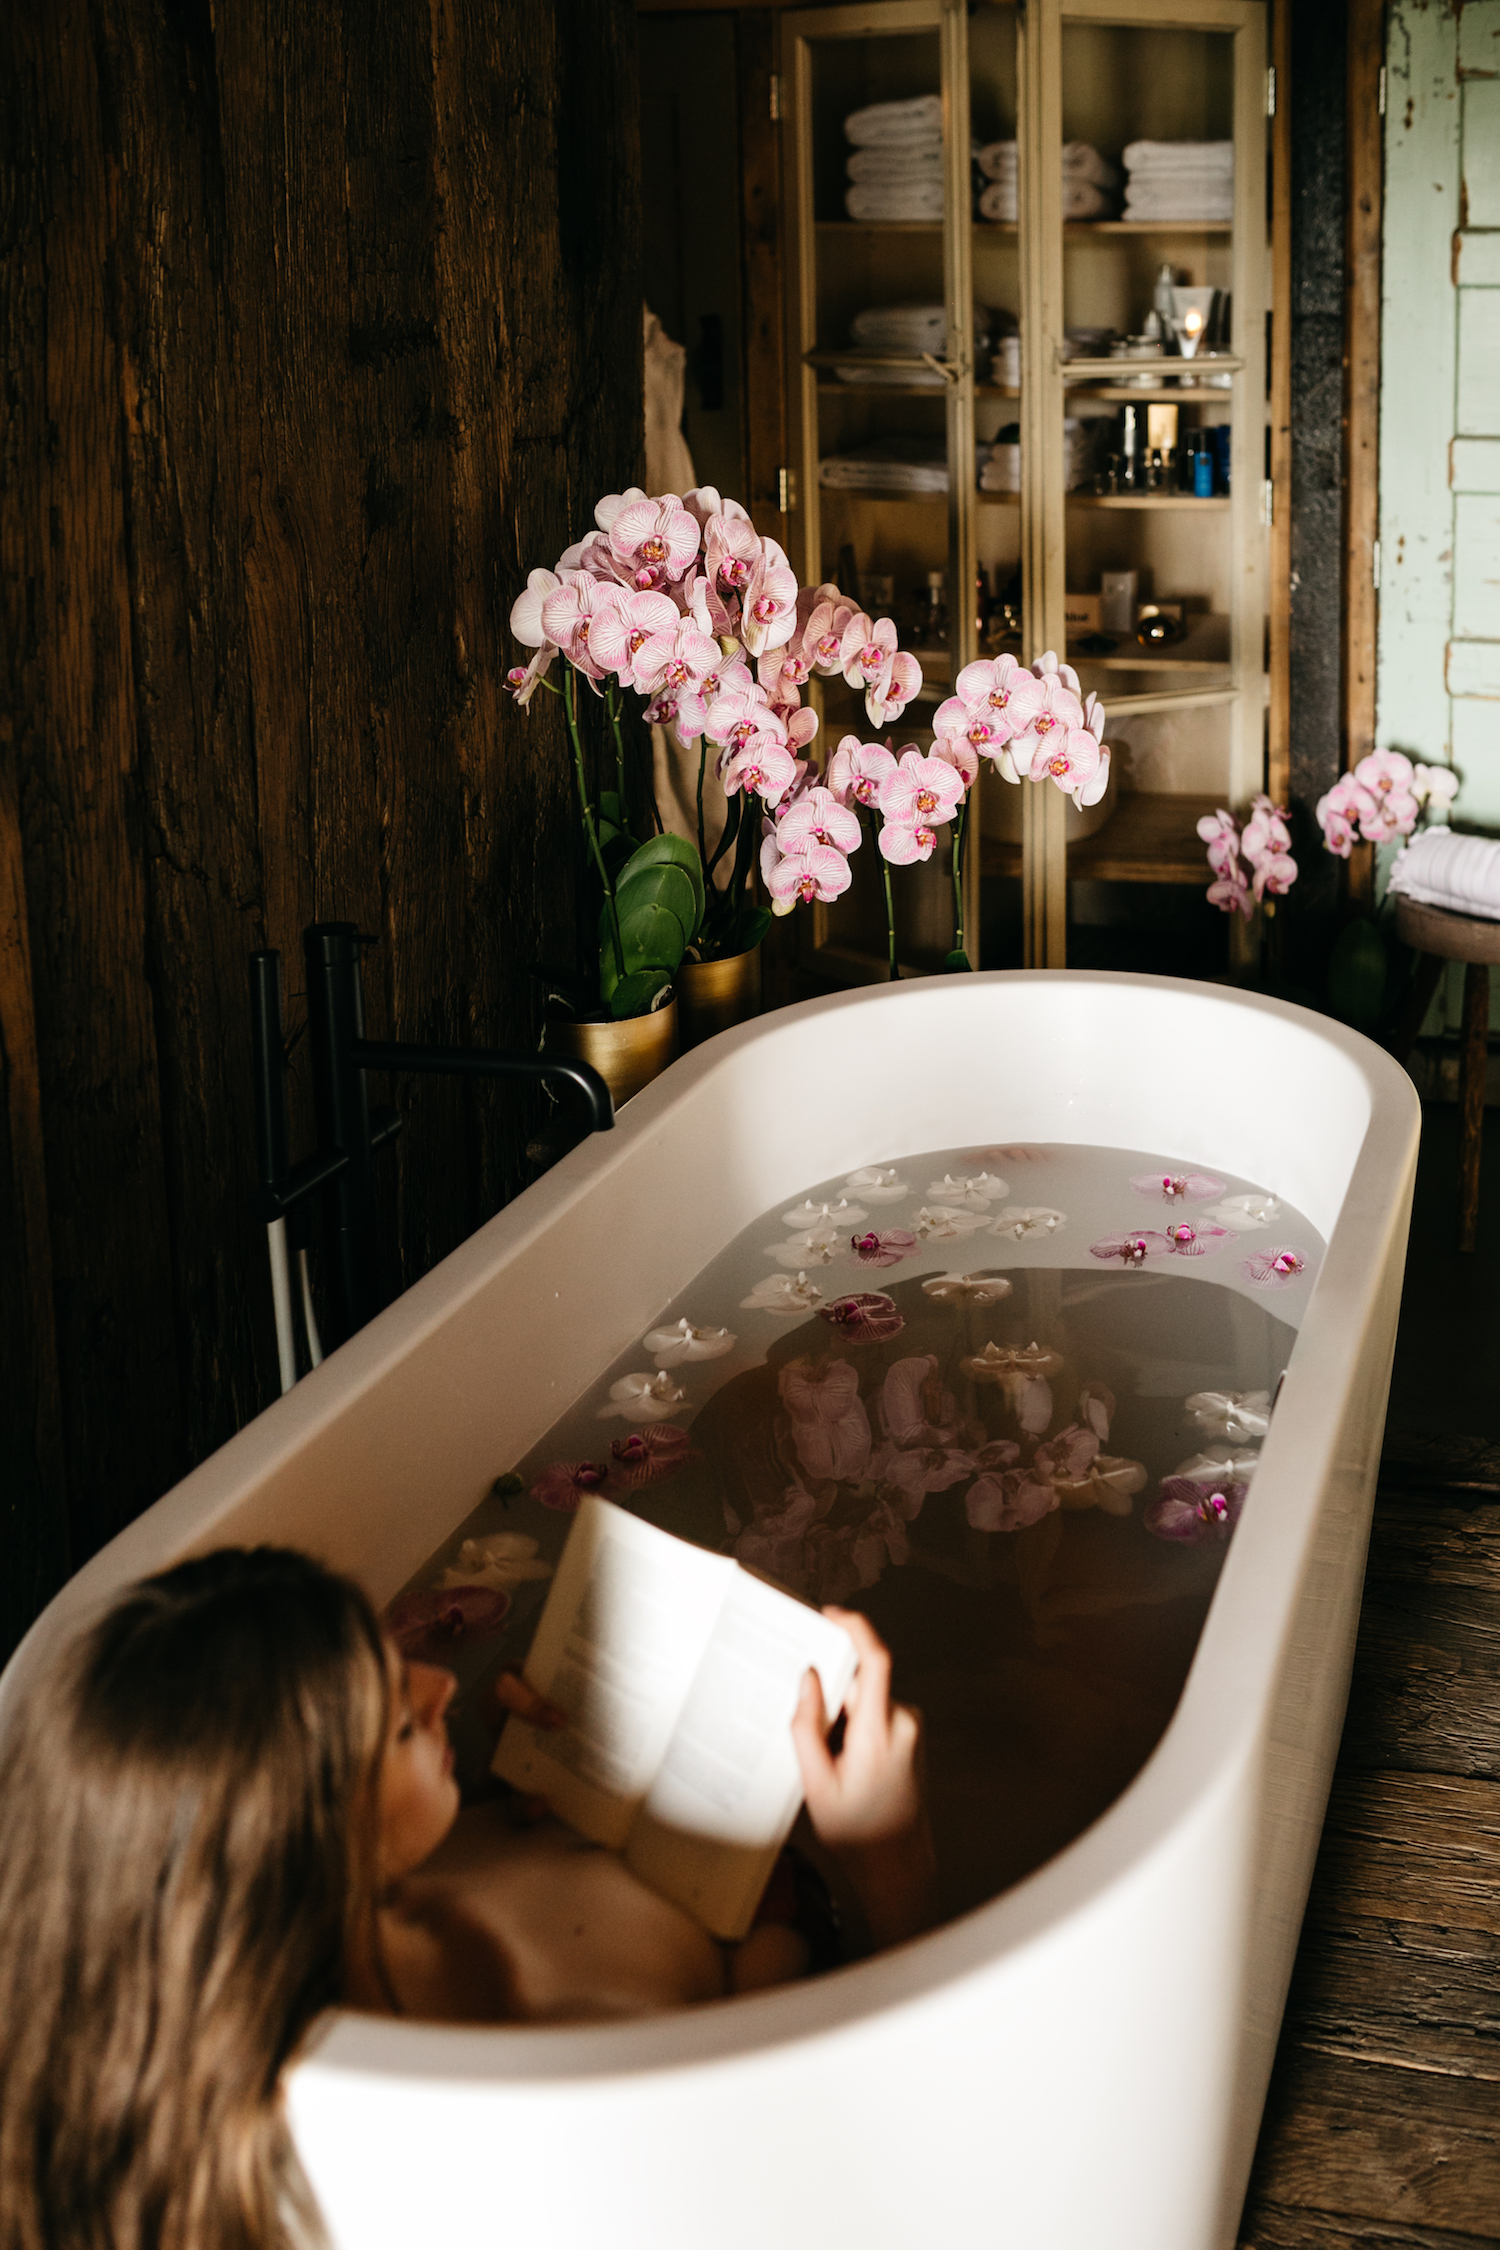 Inspiratie: decoreer je badkamer met orchidee planten